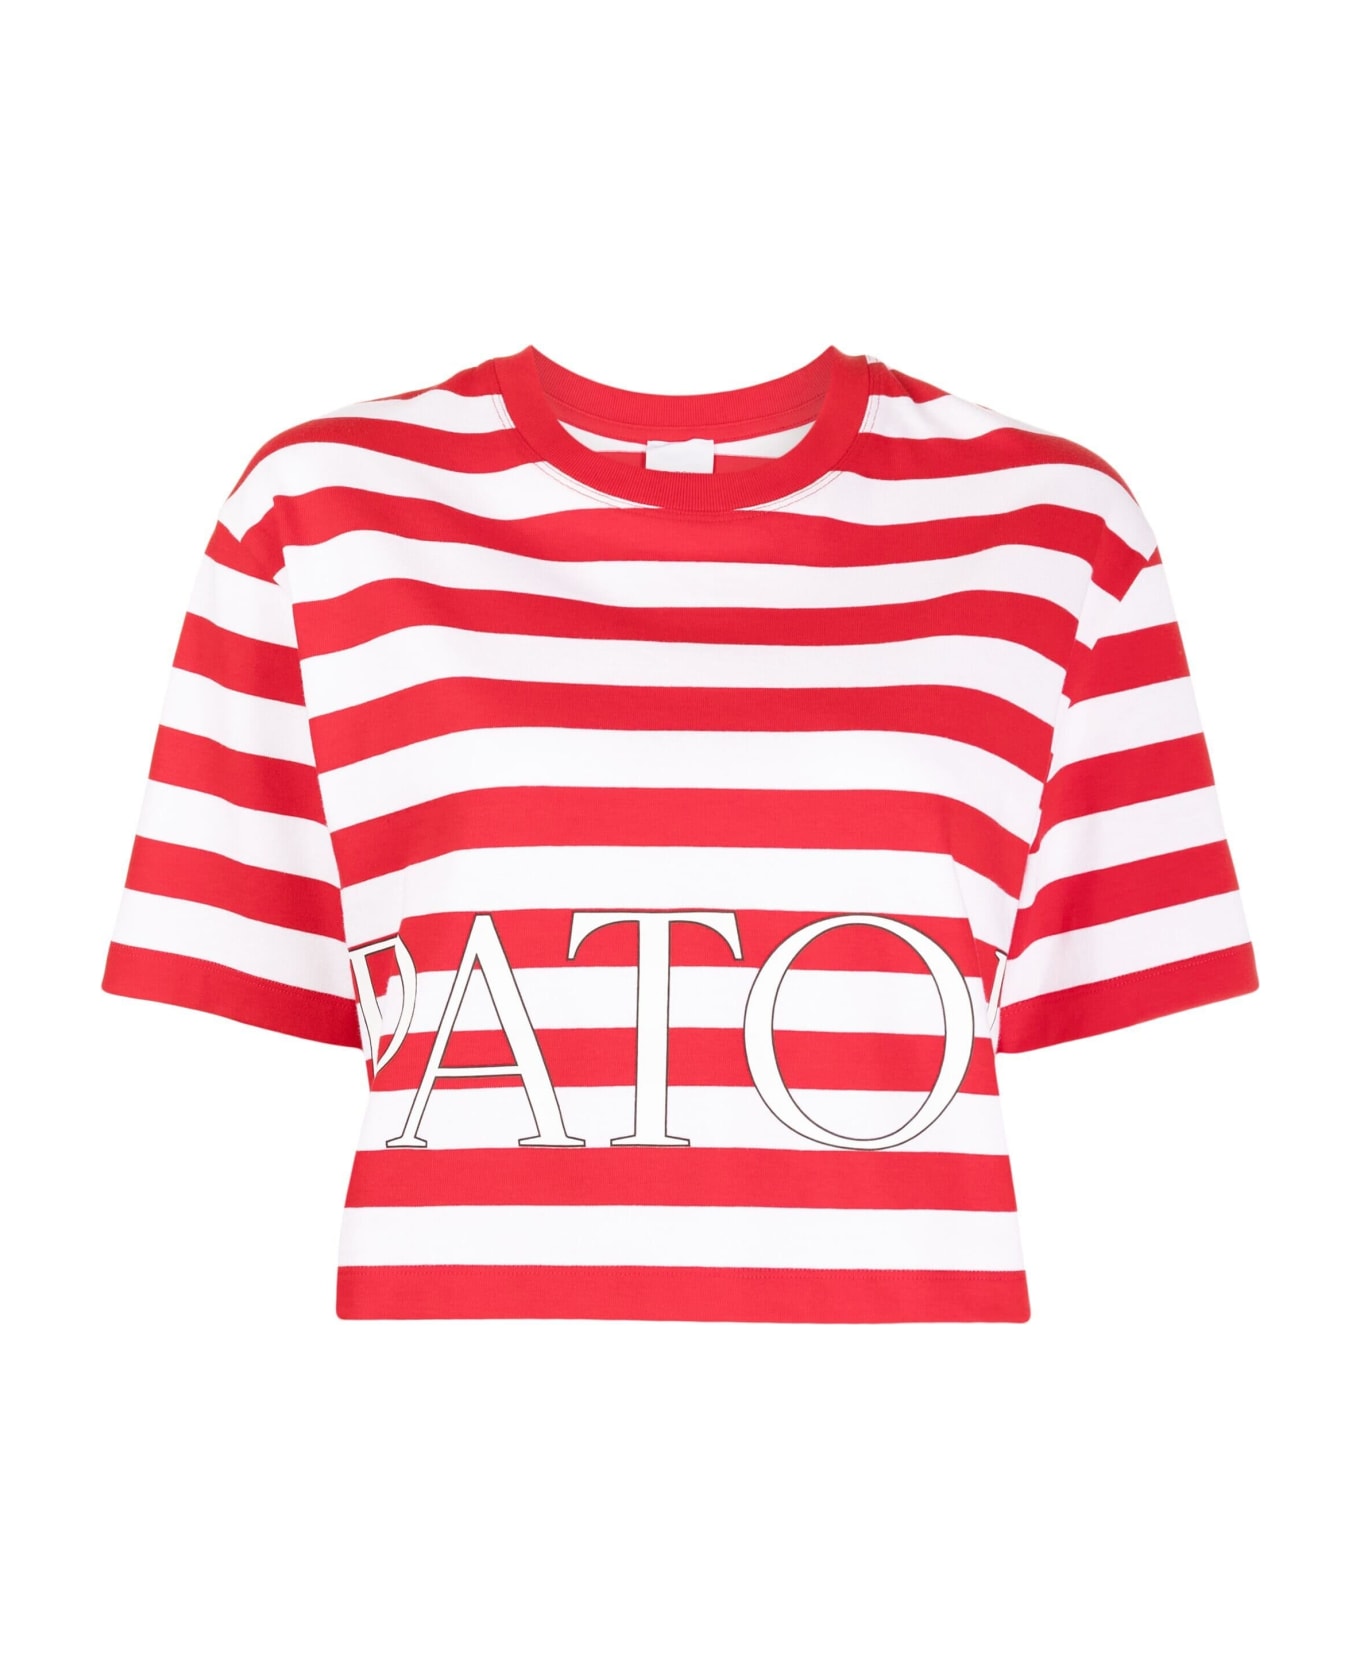 Patou T Shirt M/m - R Red White Tシャツ